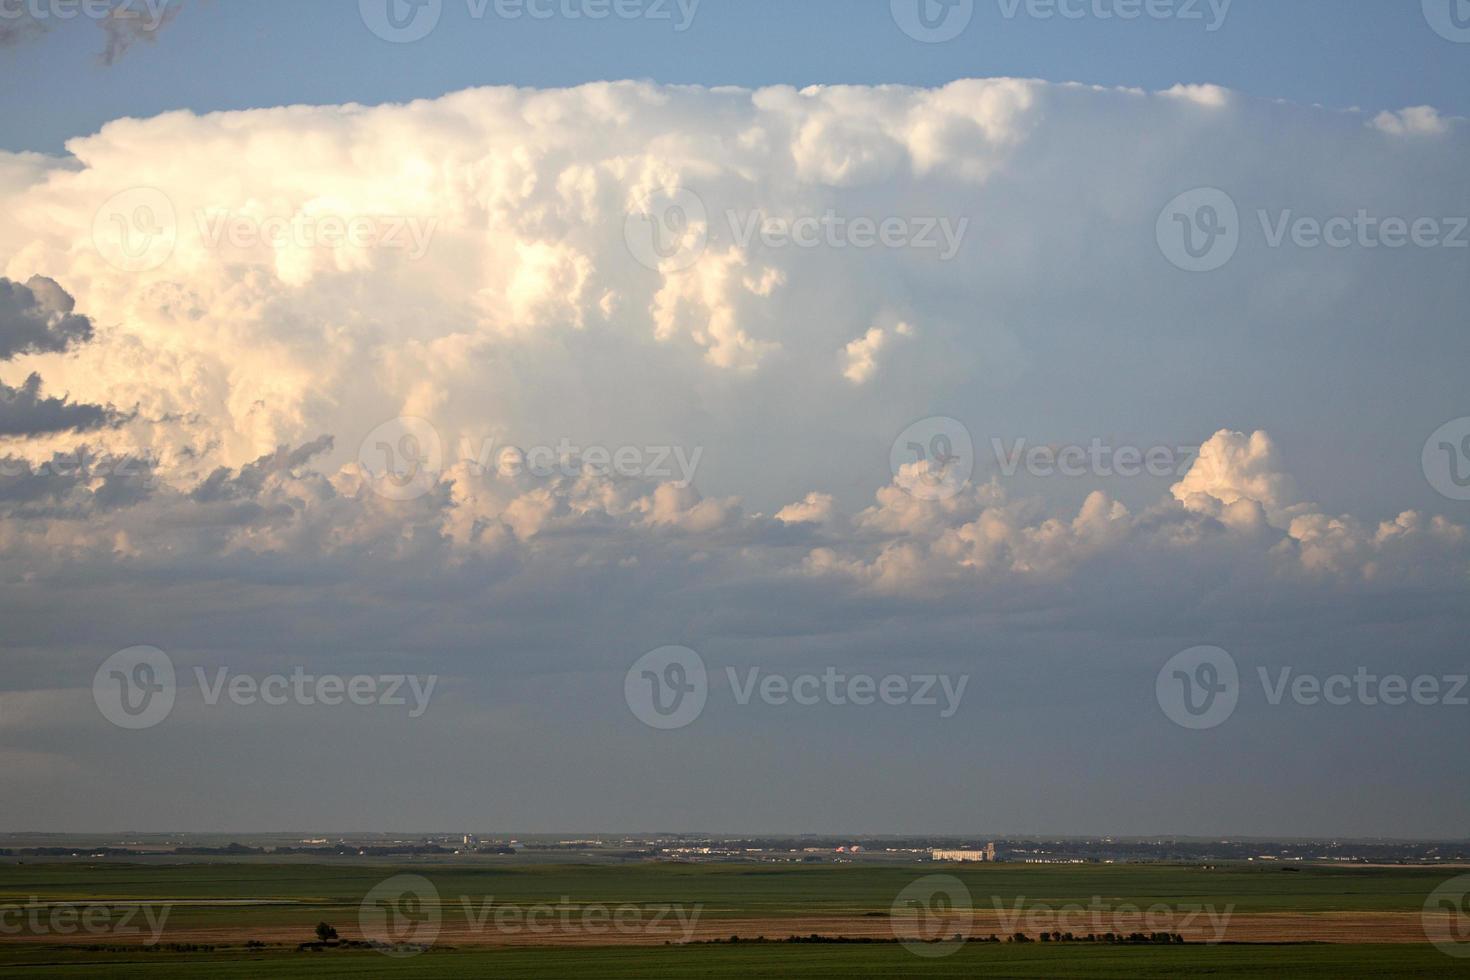 onweerswolken vormen zich boven de stad Saskatchewan foto